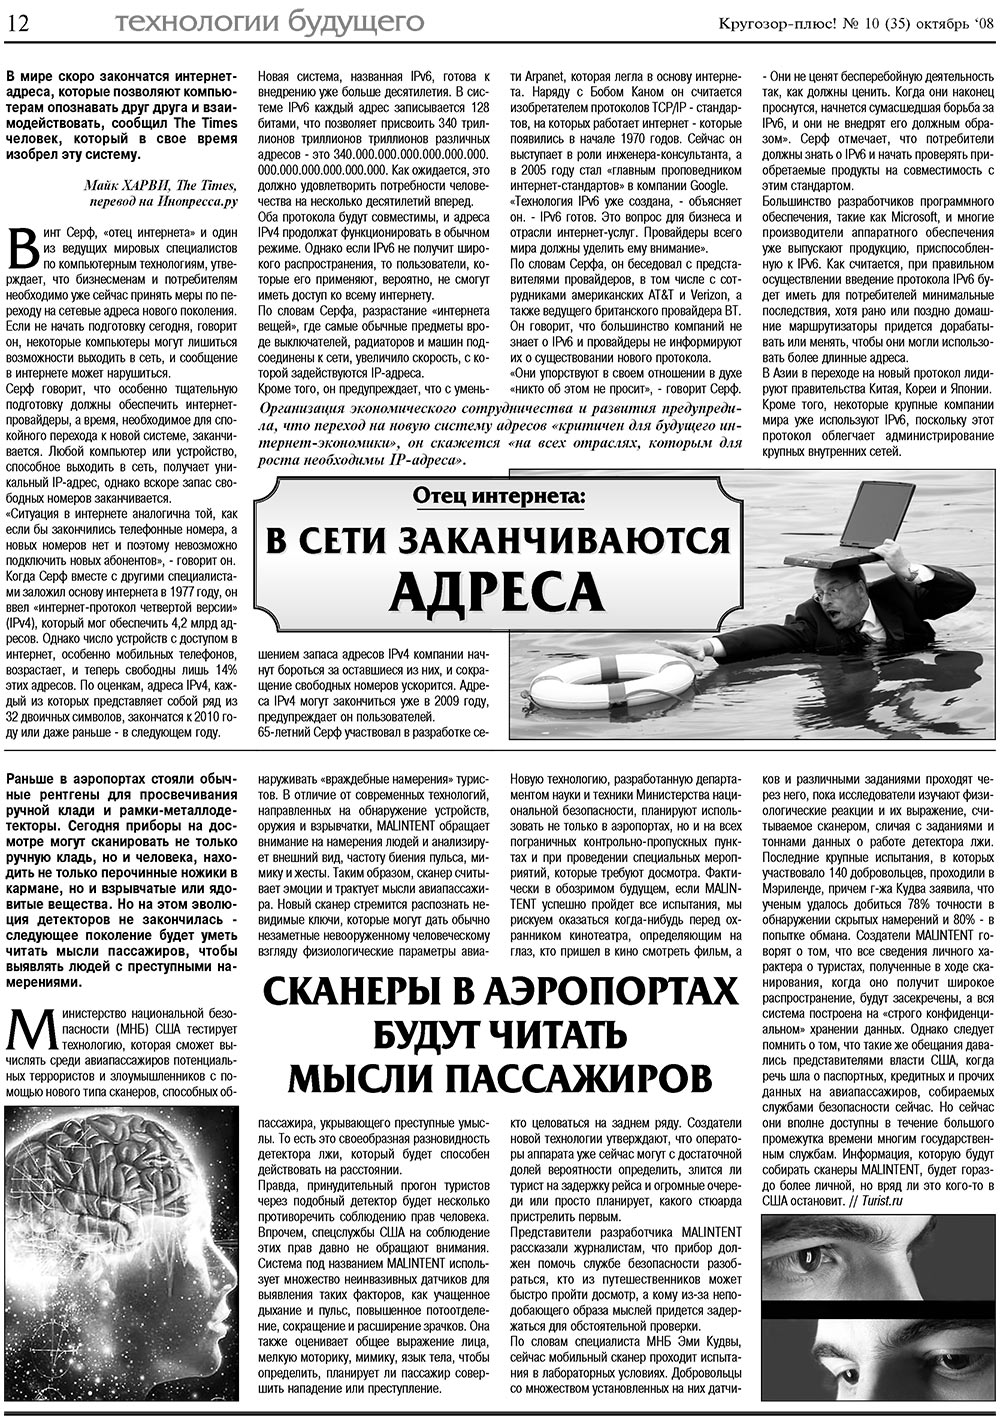 Кругозор плюс!, газета. 2008 №10 стр.12